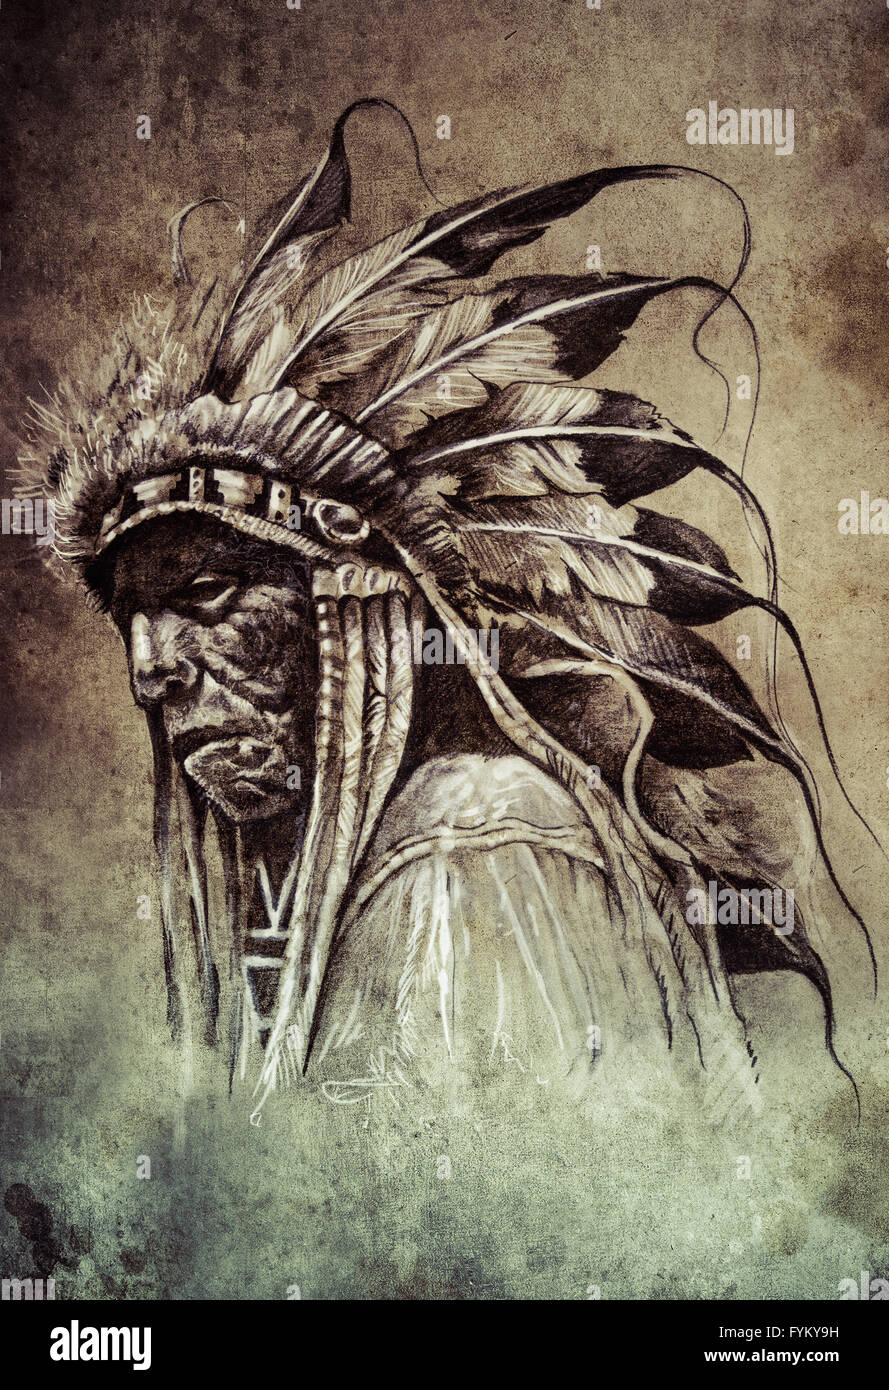 Croquis de l'art du tatouage, Native American Indian Head, chef, style vintage Banque D'Images